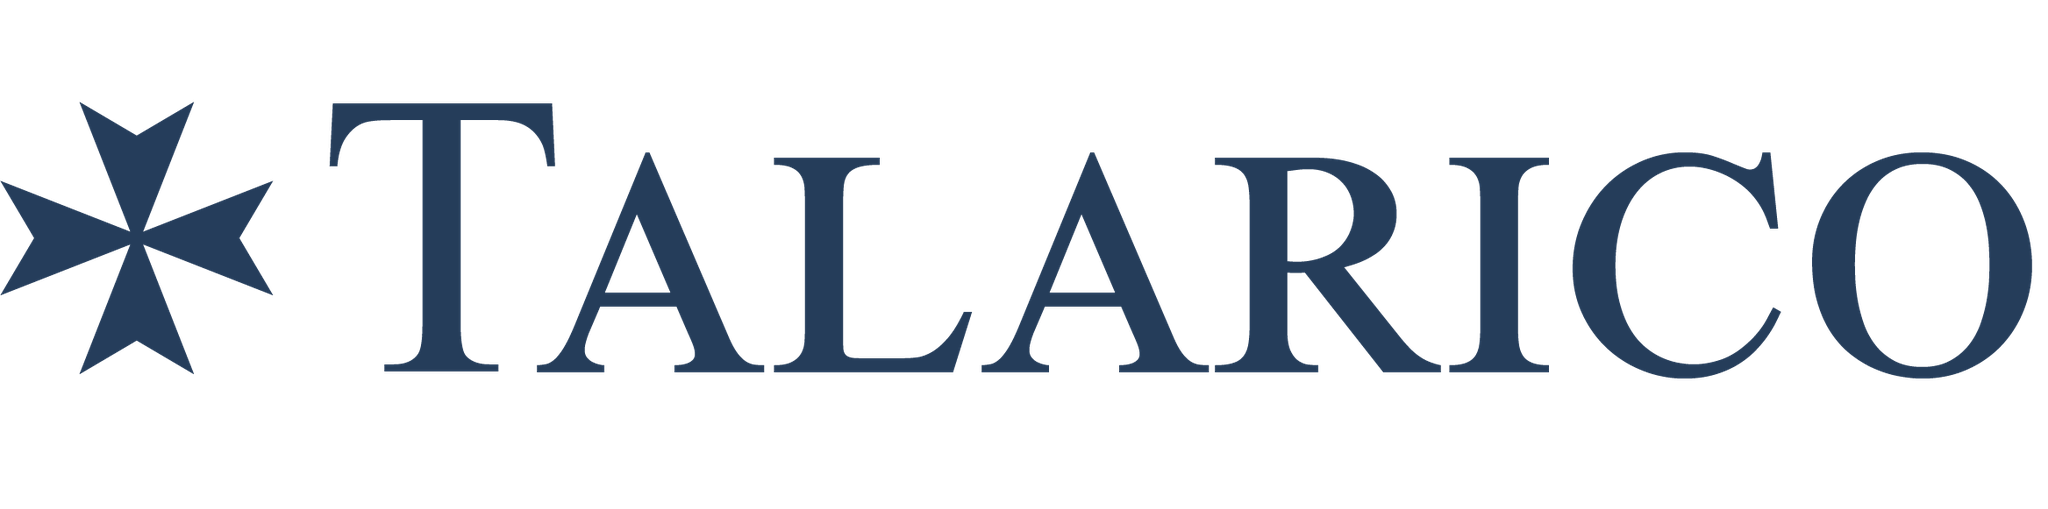 TALARICO logo.png